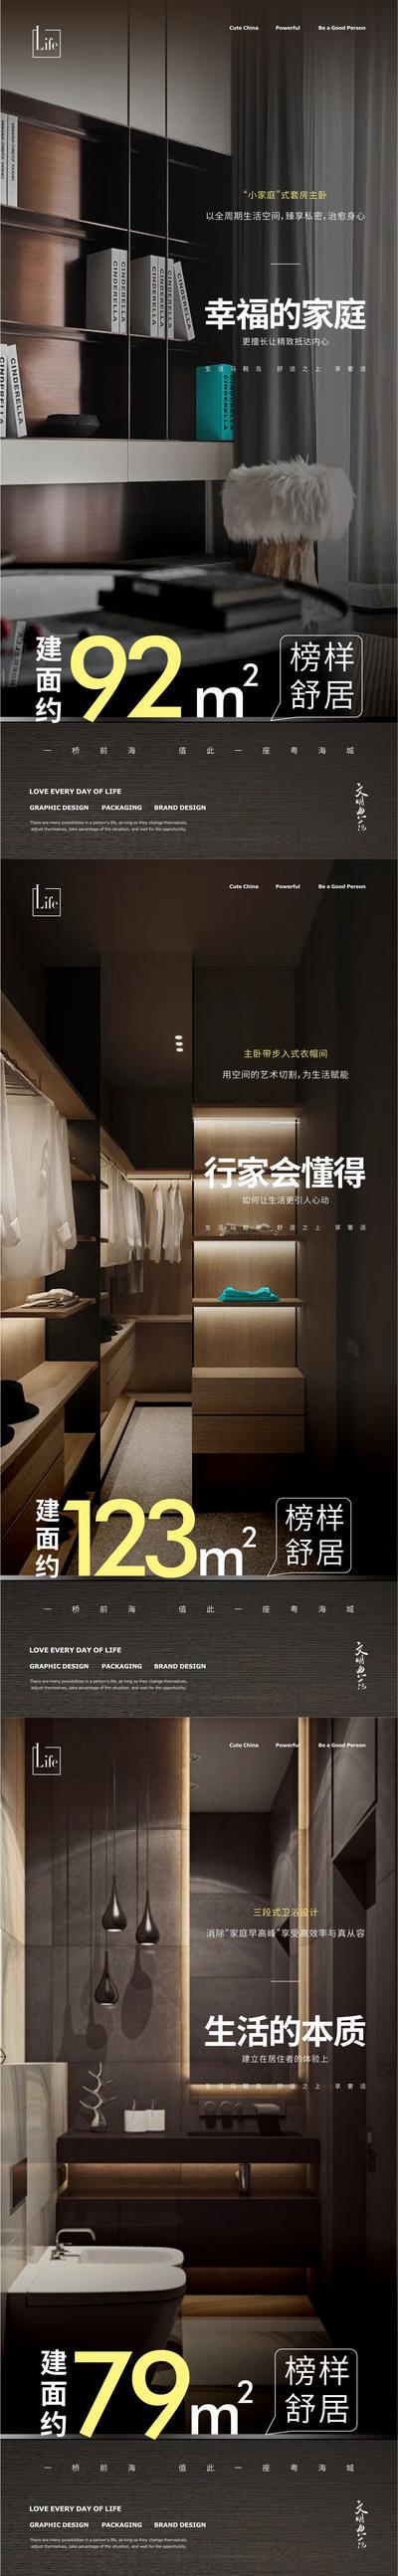 南门网 广告 海报 地产 户型 卧室 精工 系列 品质 平方 豪宅